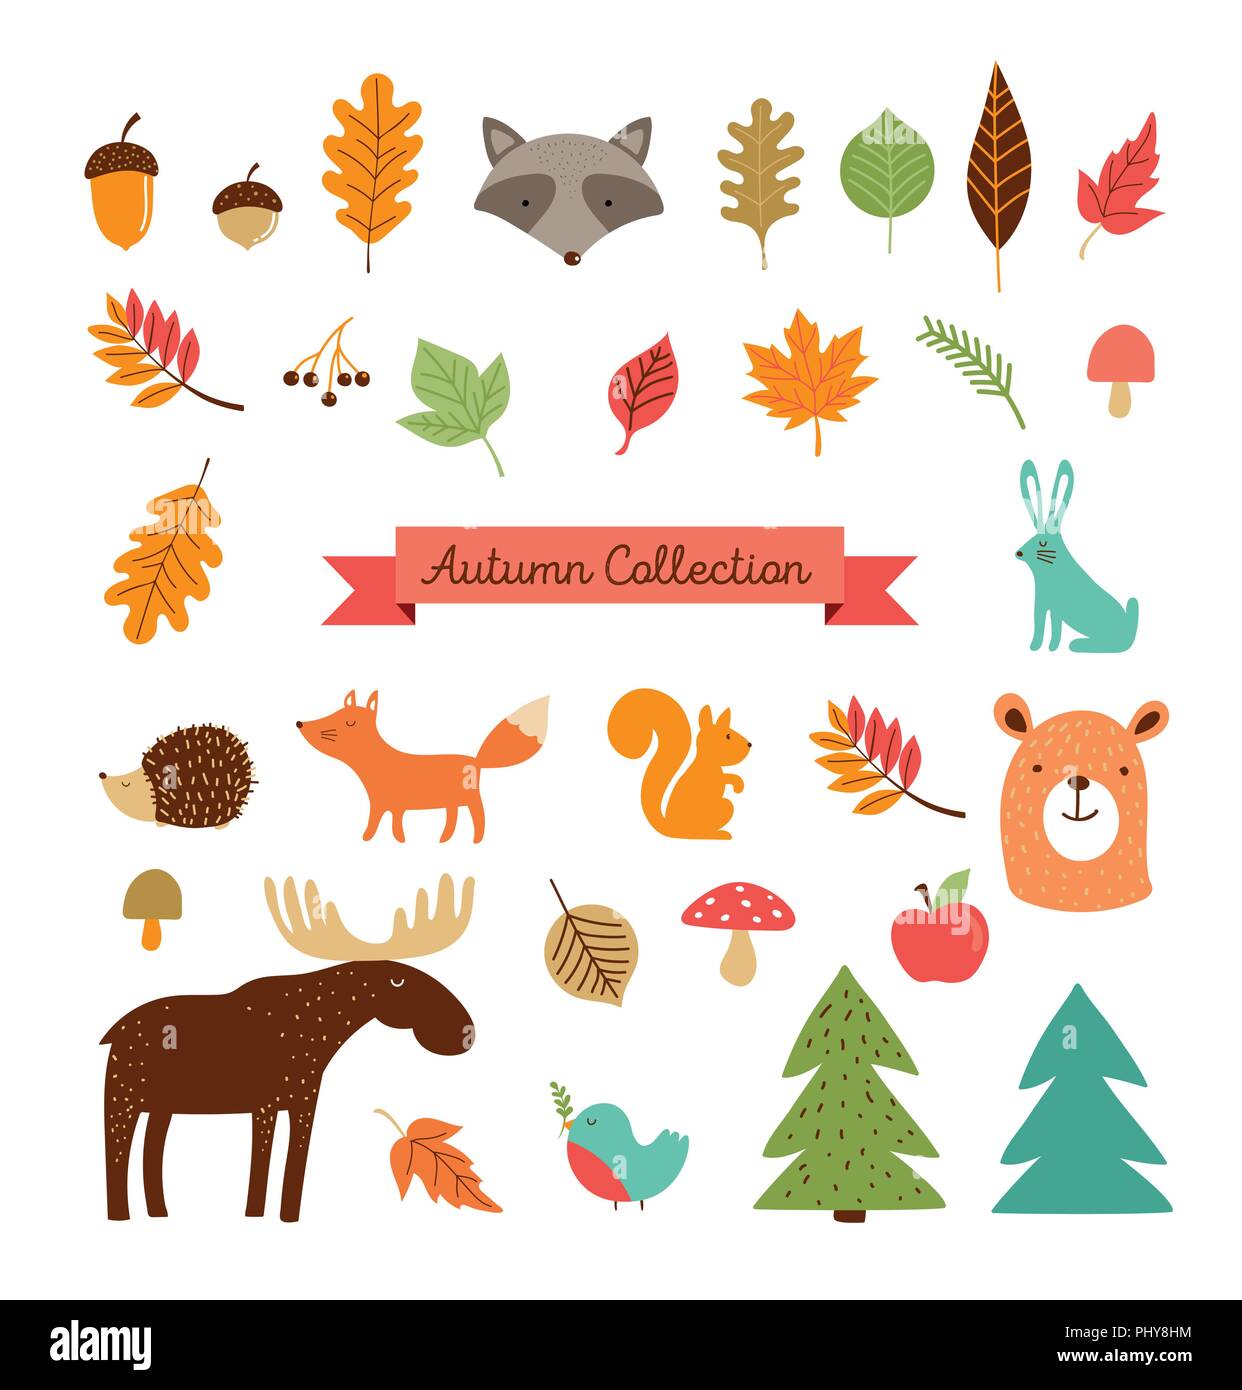 Hallo Herbst, Herbst Sammlung von Wald Tiere, Elemente und Illustrationen, Aufkleber, Symbole Stock Vektor